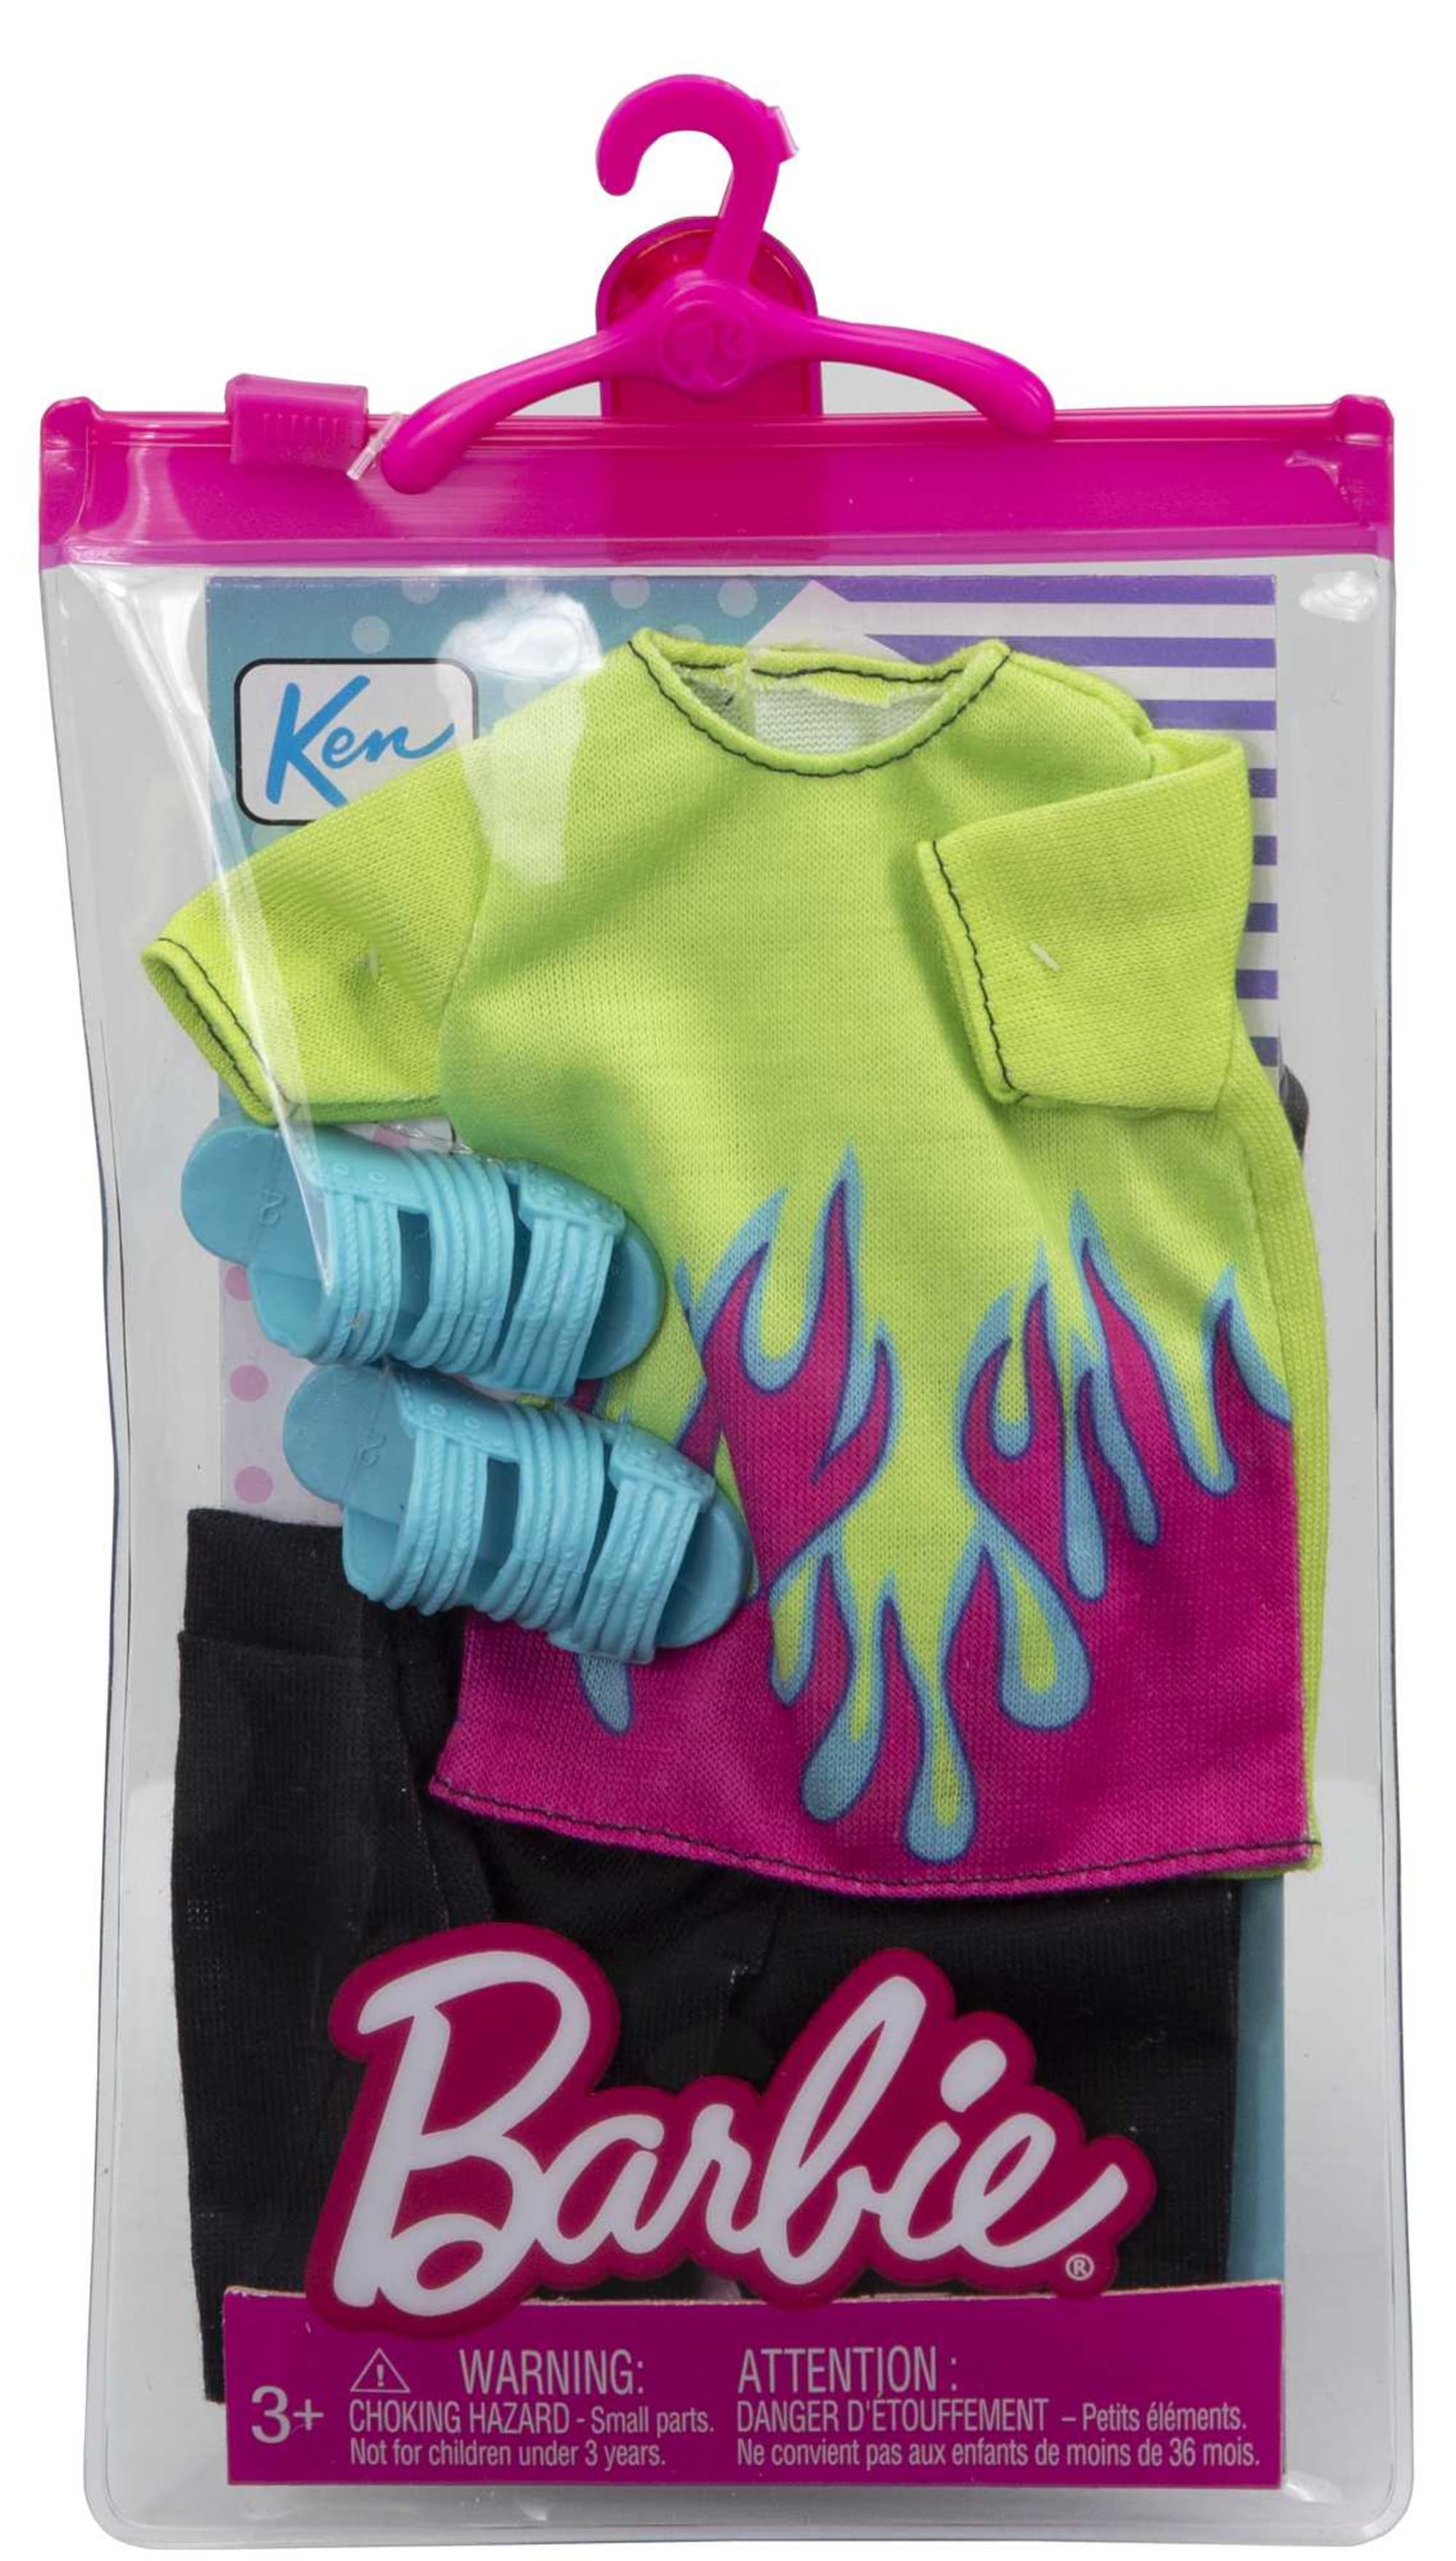 Vêtements Barbie Ken 3 set/ 1 Pq. - Poupées et accessoires - Creavea